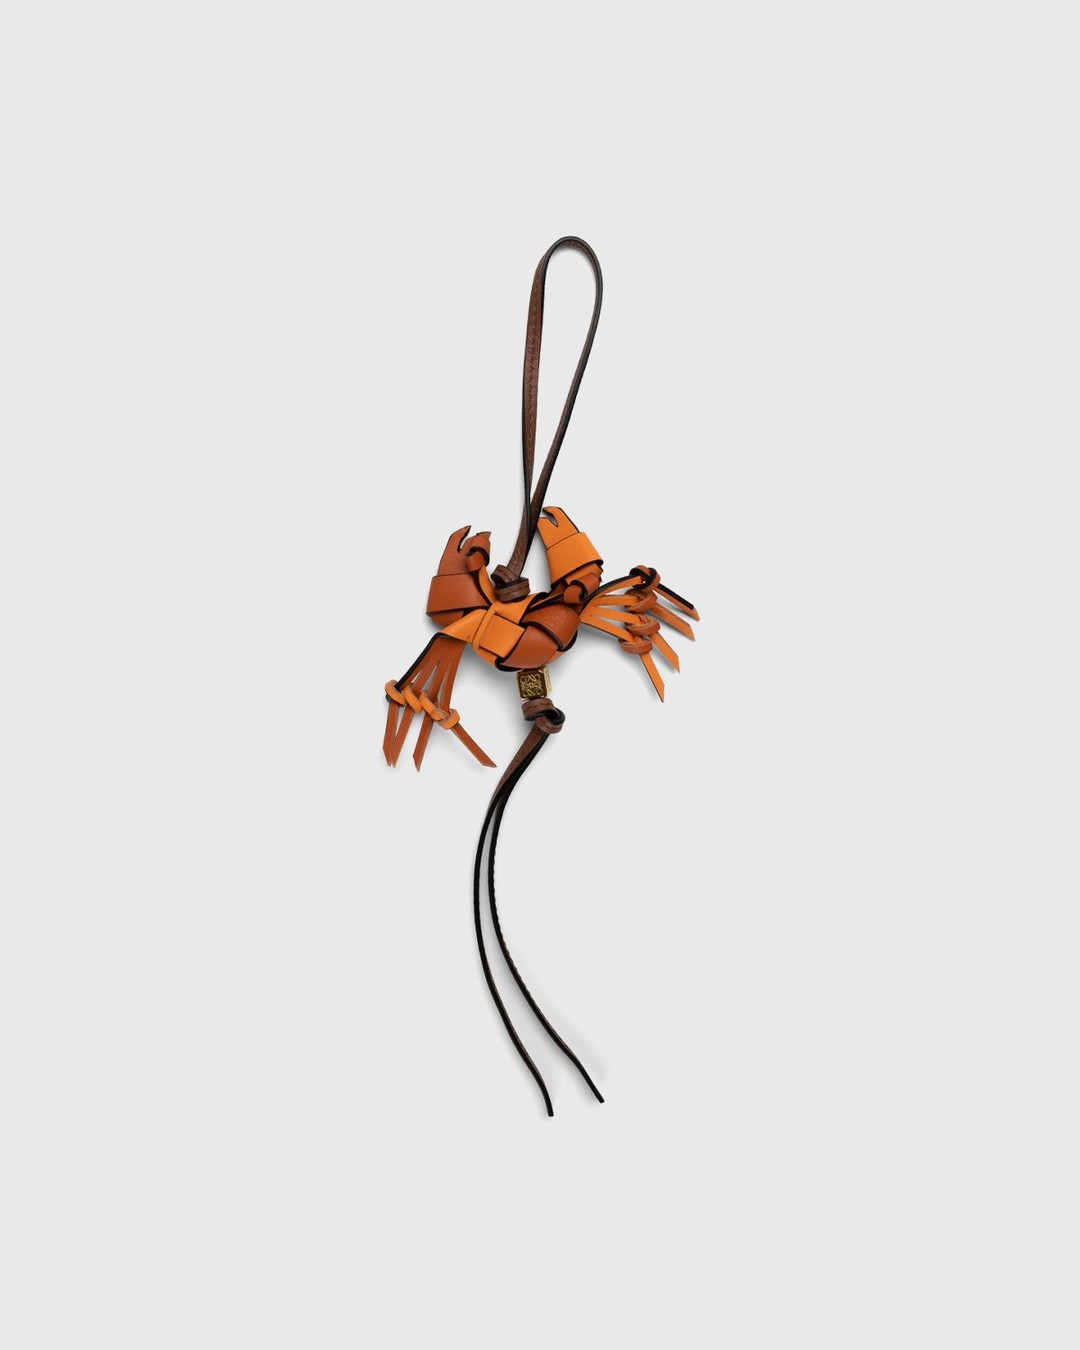 Loewe – Paula's Ibiza Crab Charm Orange - Keychains - Orange - Image 1